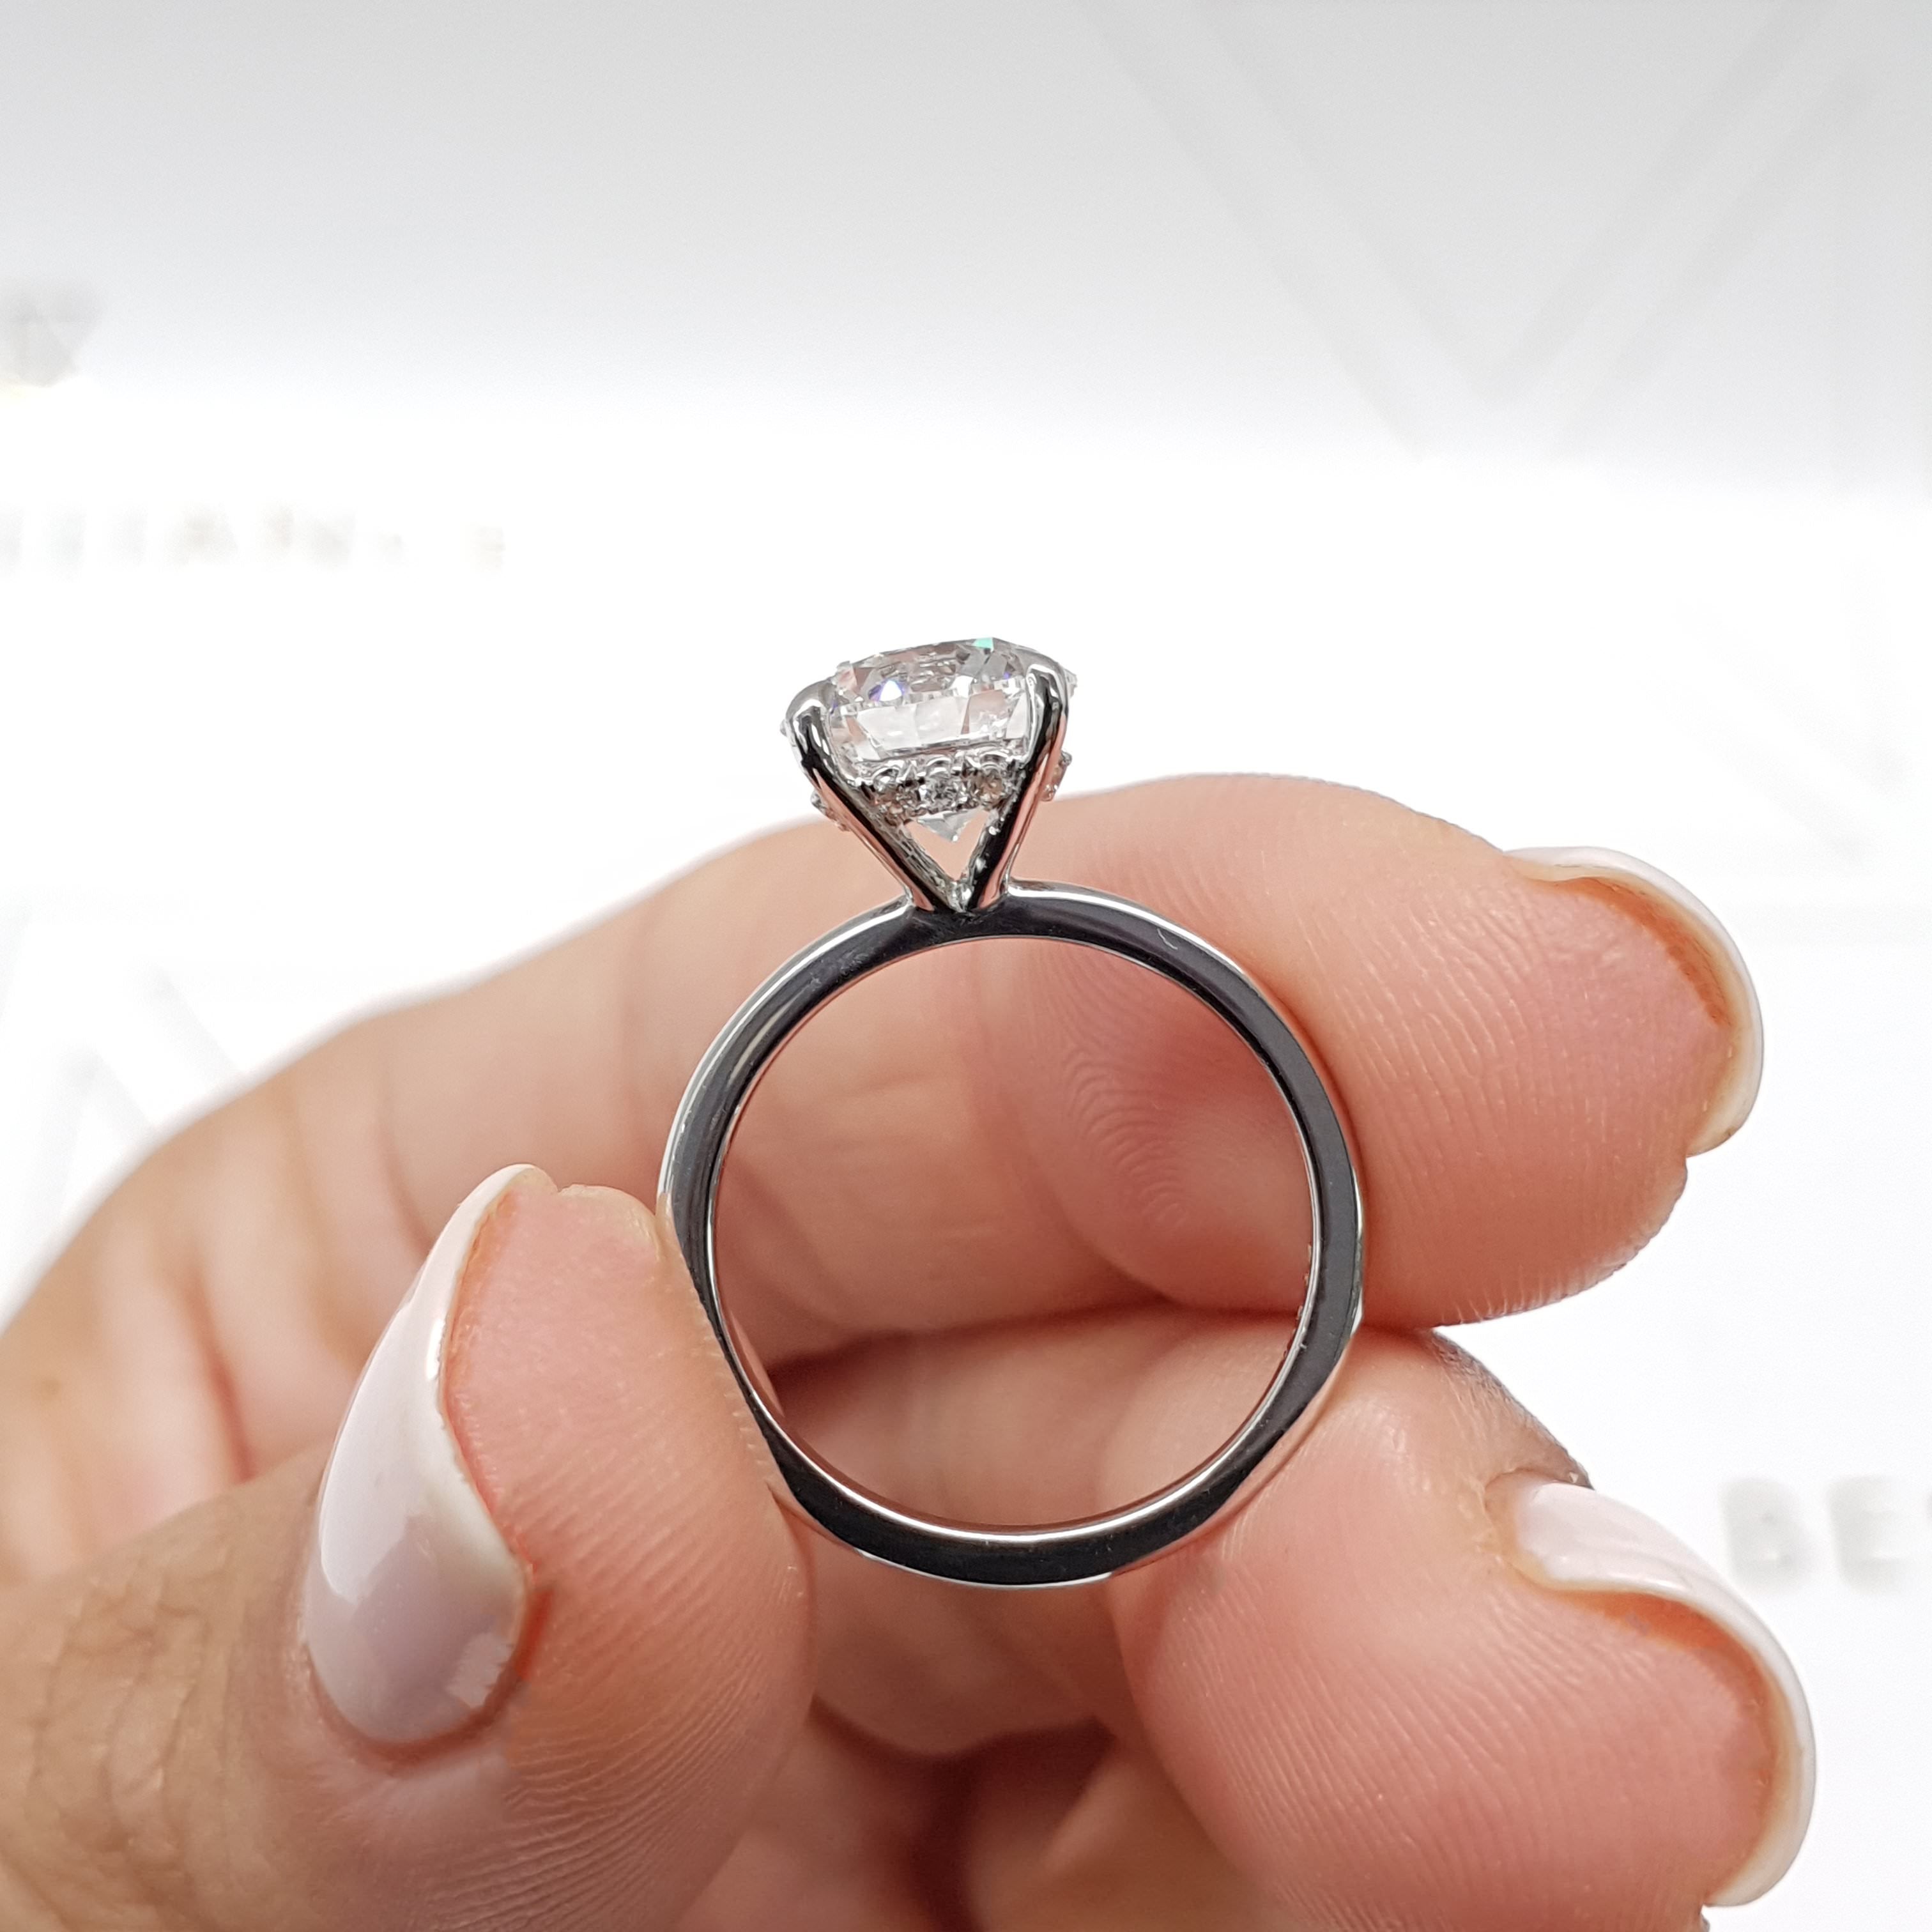 Cynthia Lab Grown Diamond Ring   (2.1 Carat) -14K White Gold